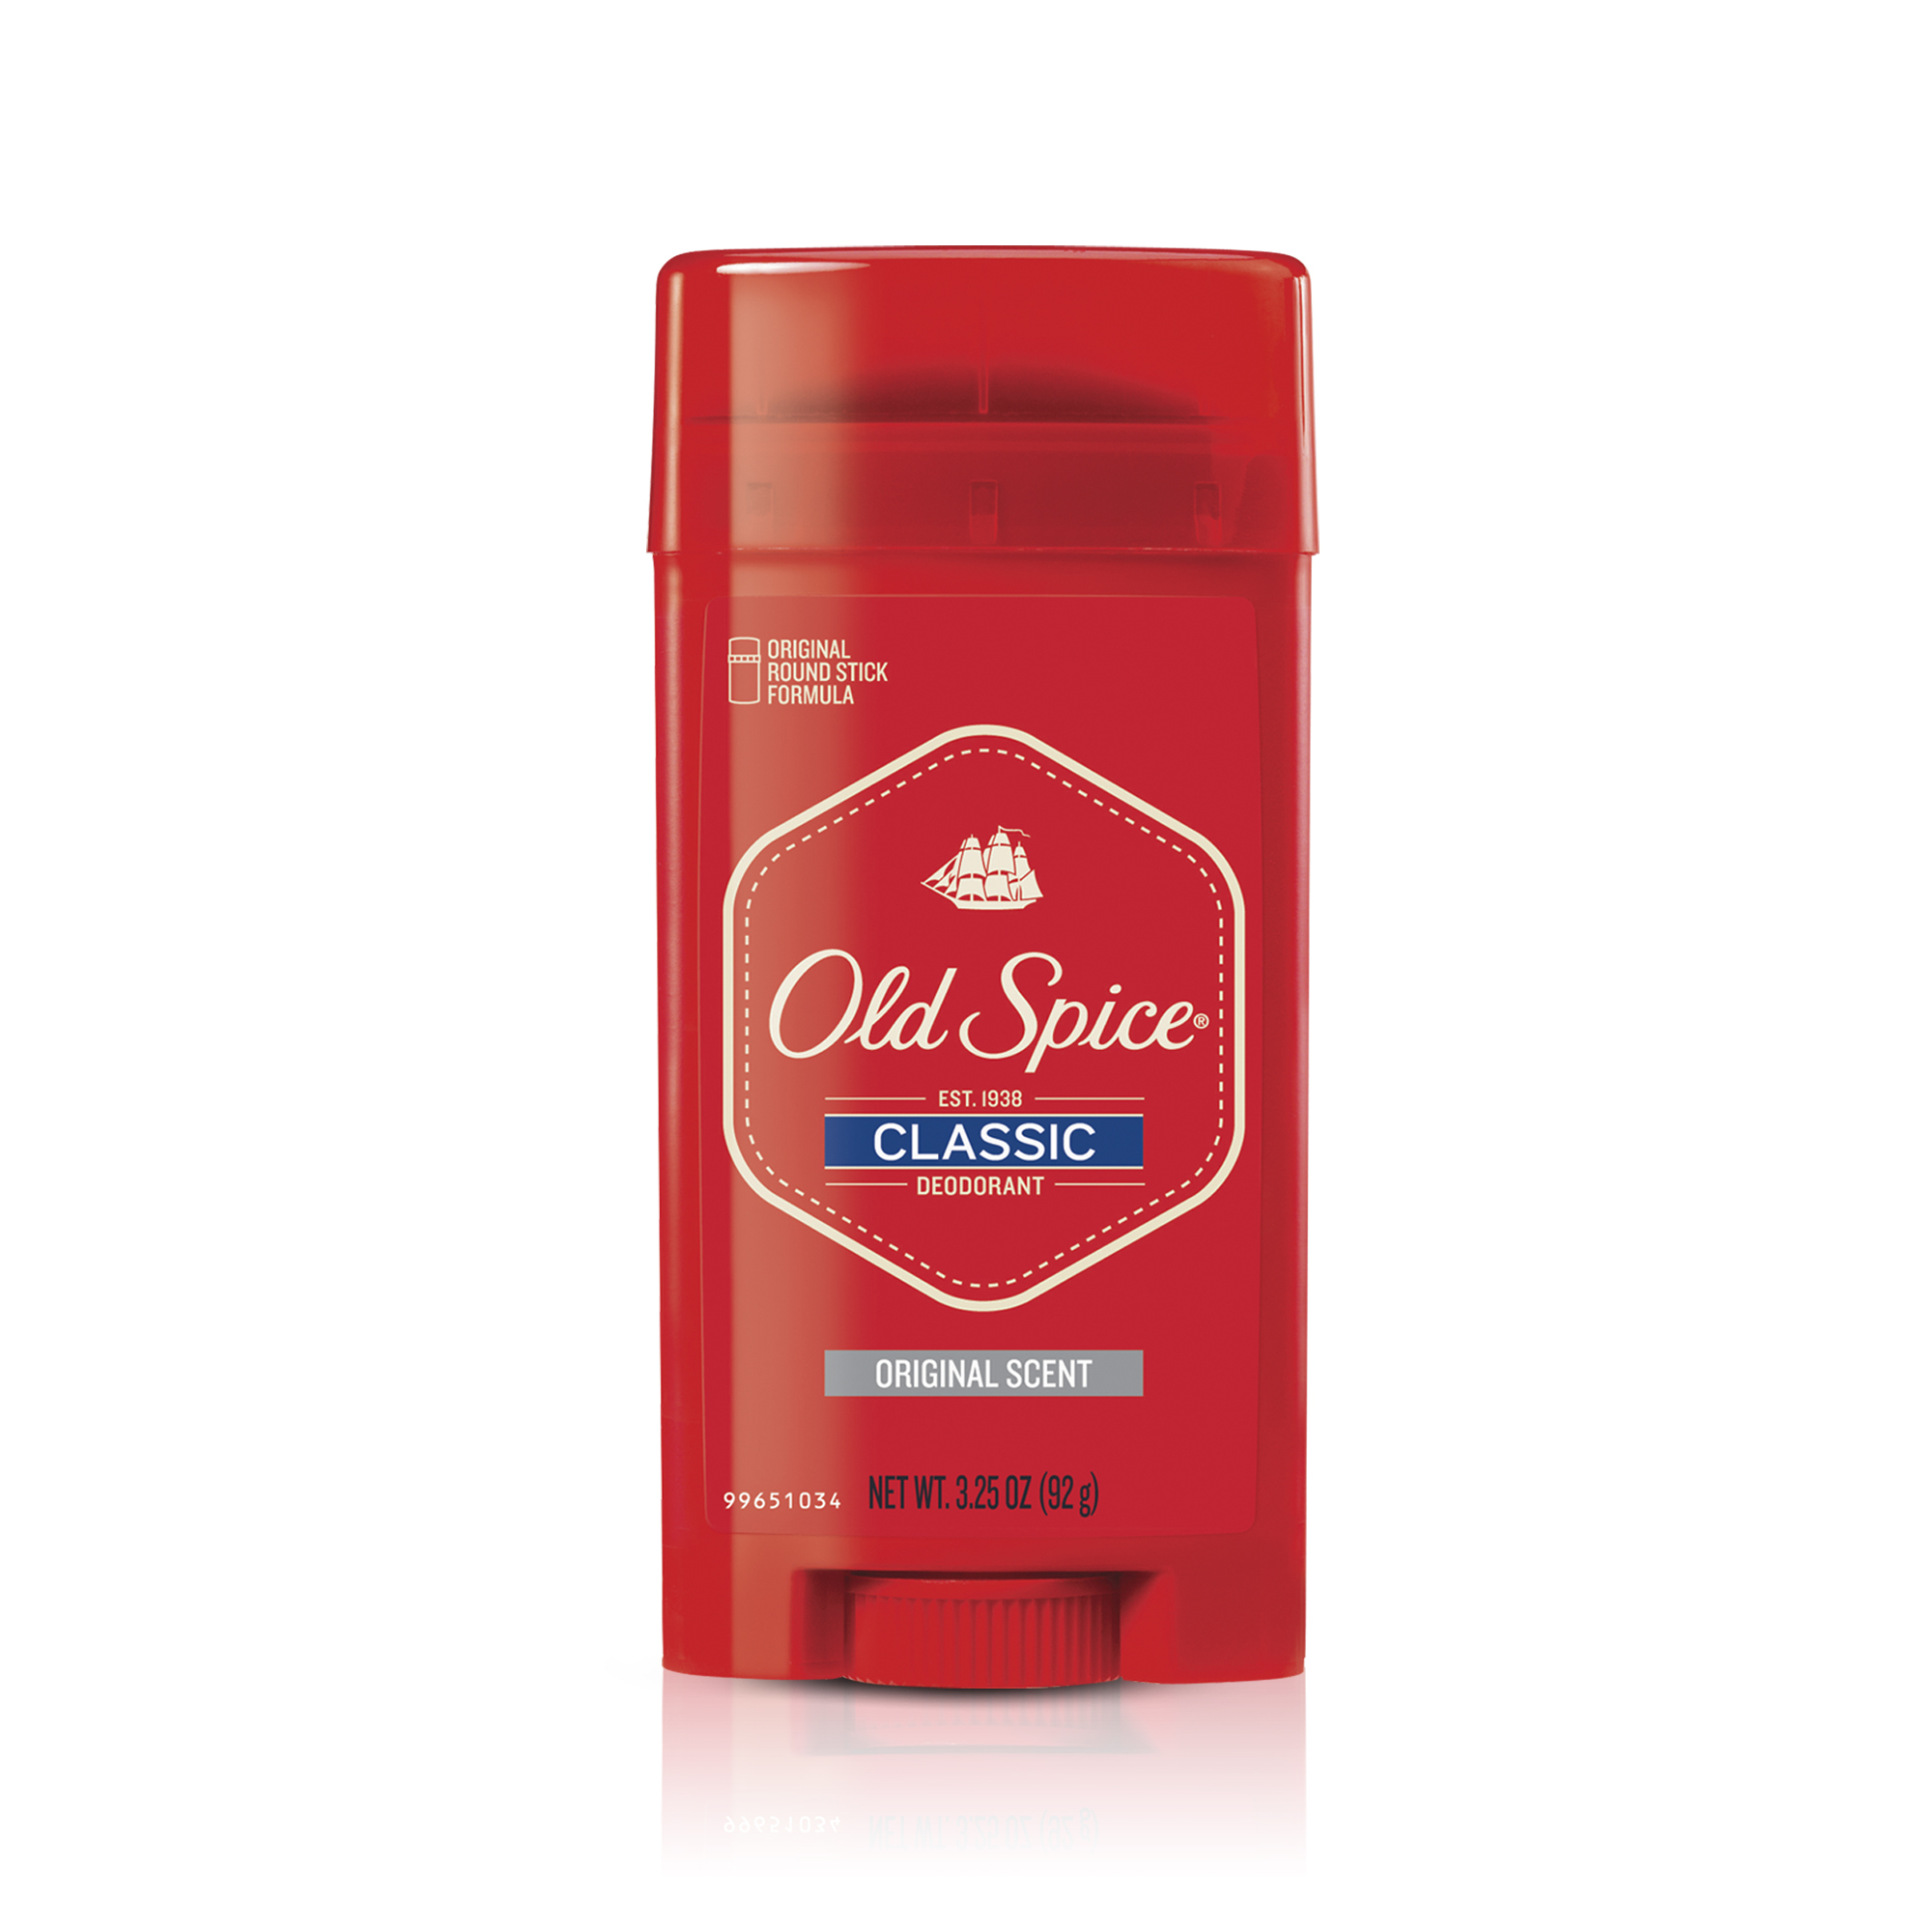 Old Spice Classic Deodorant for Men, Original Scent, 3.25 oz - image 4 of 6